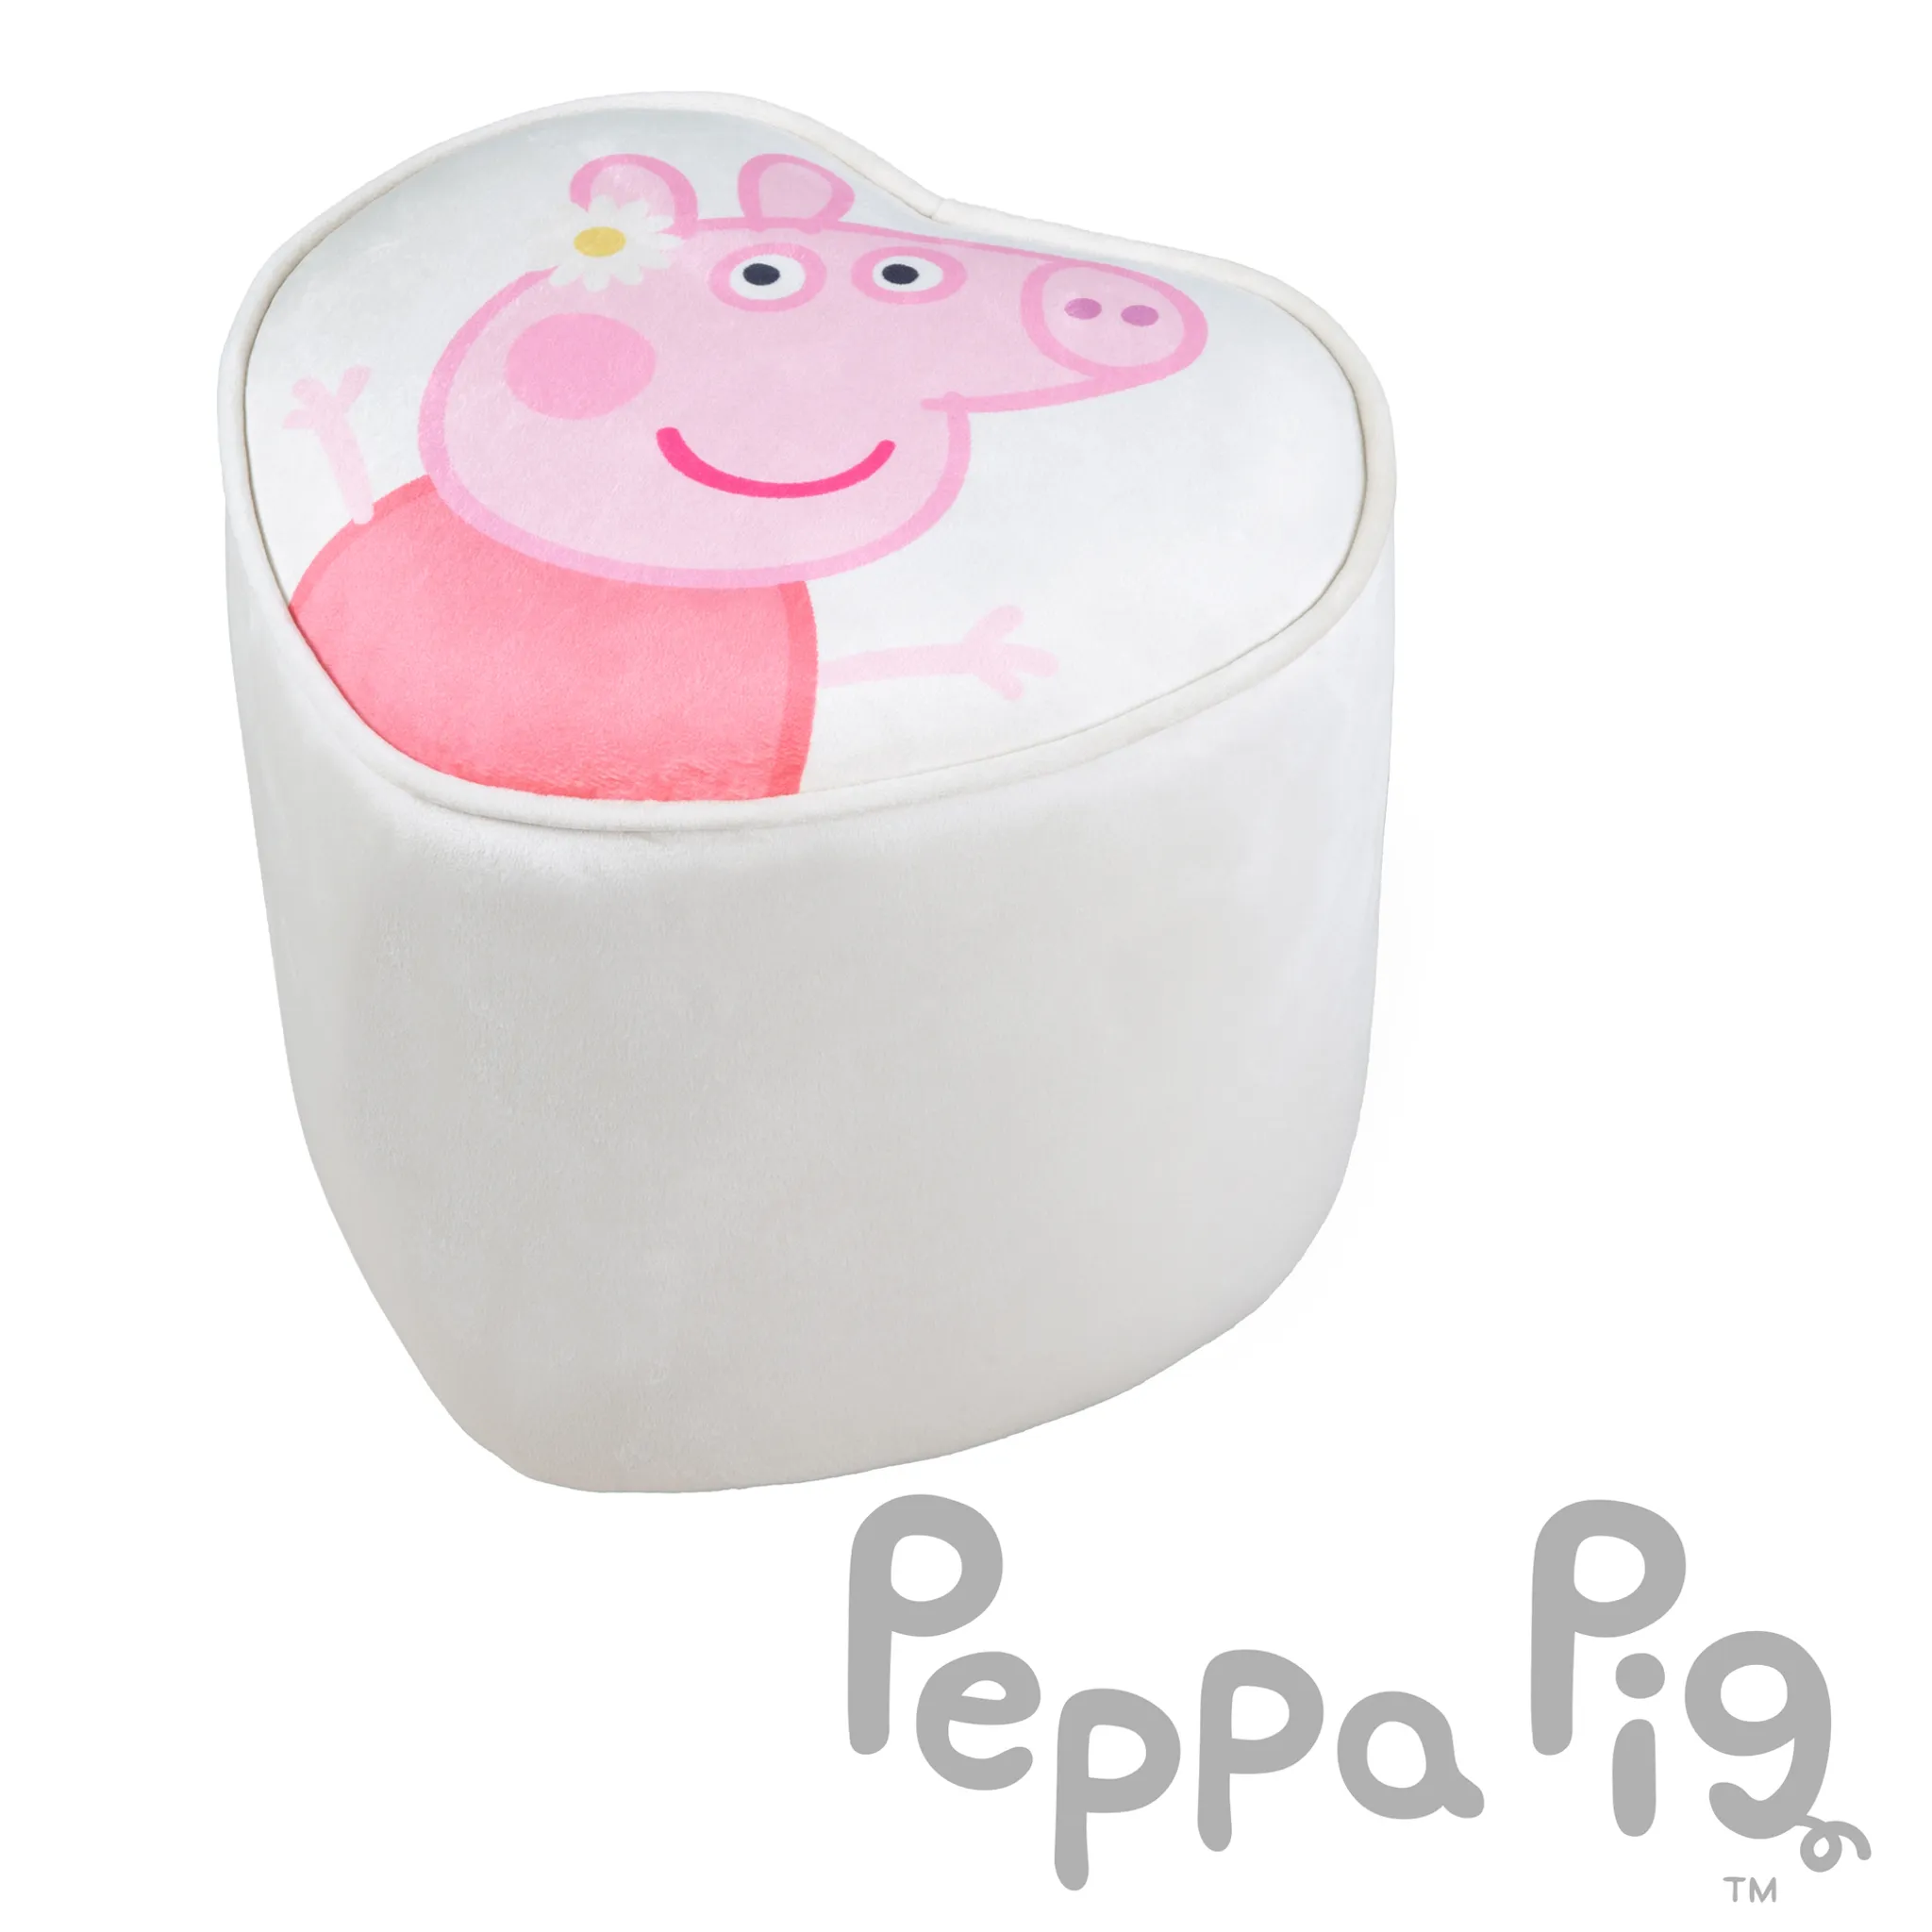 Kinderhocker im Peppa Pig Design - Hocker für